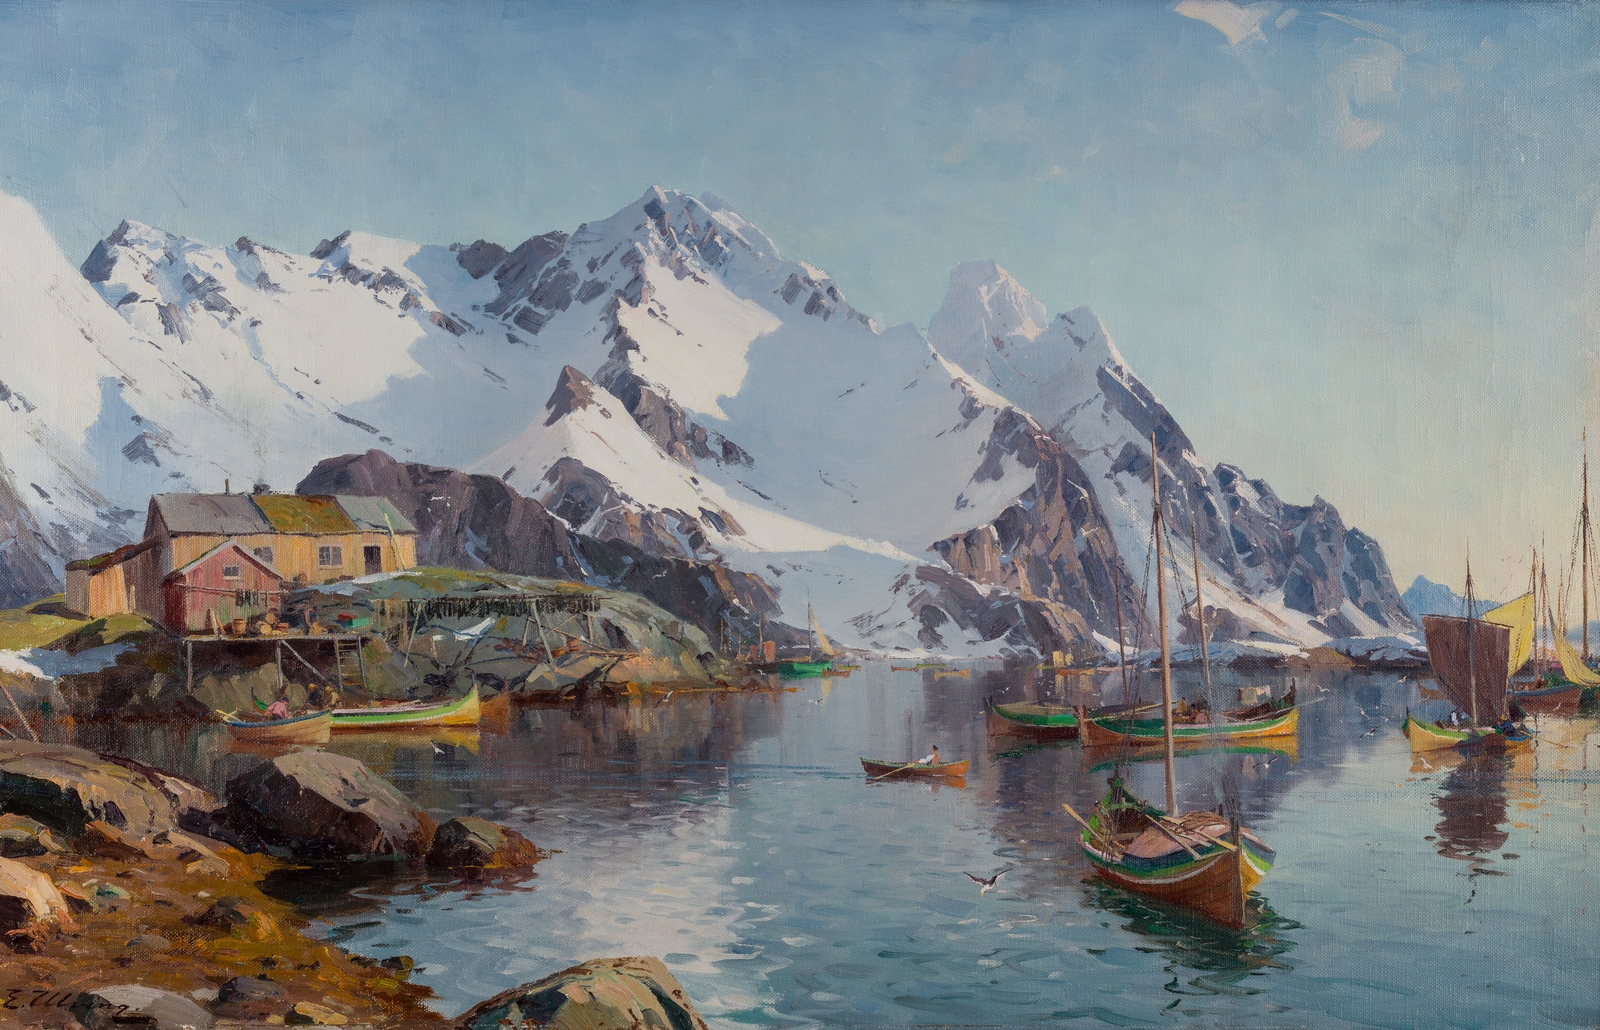 Artwork by Even Ulving, Fra Å i Lofoten, Made of Oil on canvas